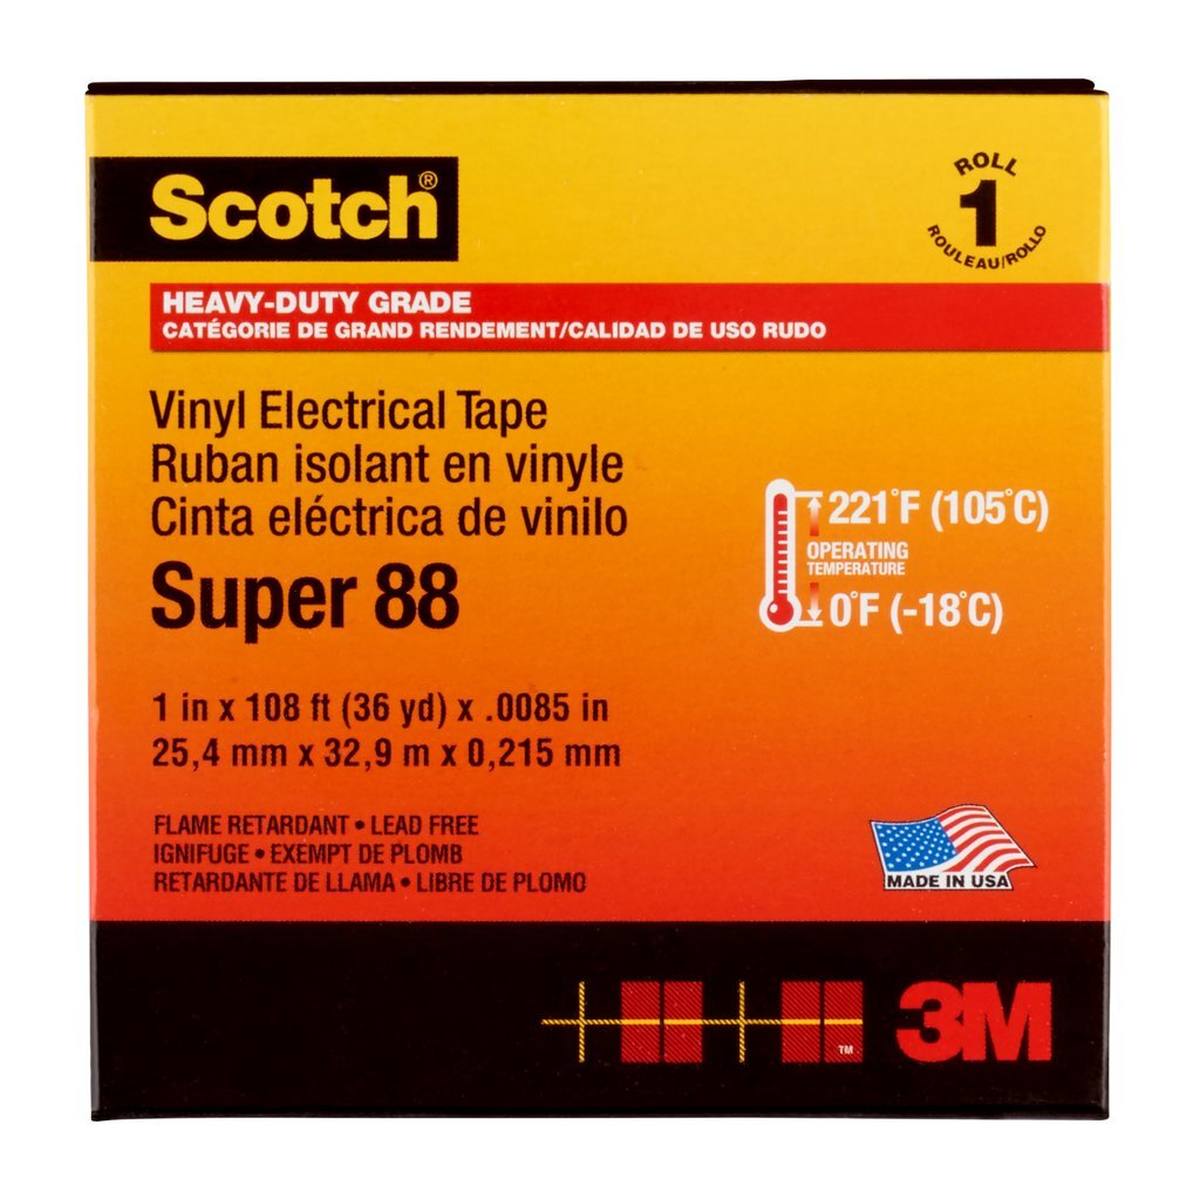 3M Cinta aislante eléctrica de vinilo Scotch Super 88, negra, 25 mm x 33 m, 0,22 mm